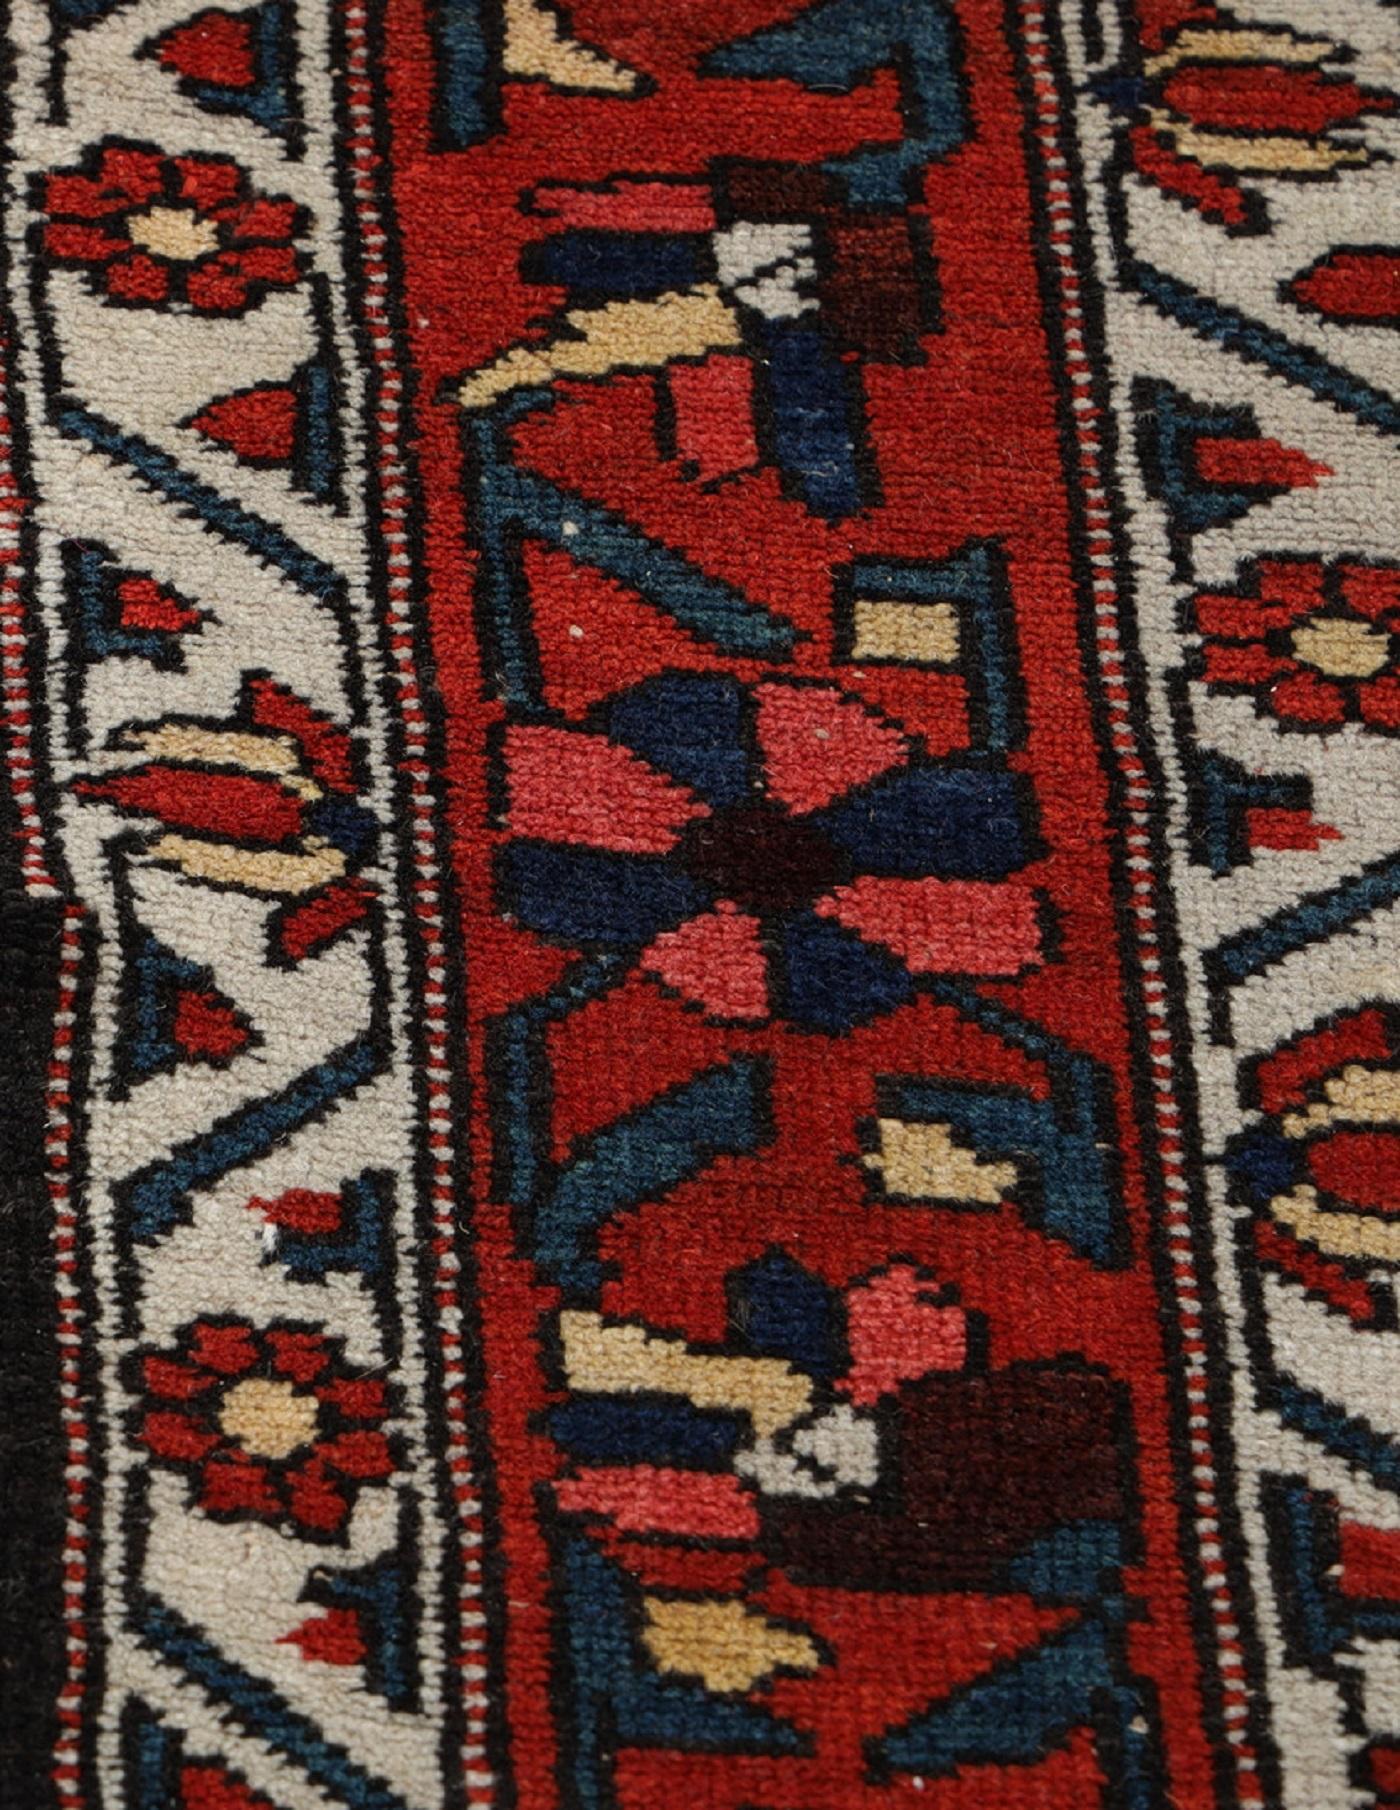 Ce tapis traditionnel tissé à la main a été fabriqué dans les années 1890. Il présente un médaillon central très détaillé, tissé sur un champ rouge profond, avec des accents de bleu ivoire et de rouge. Tissé à la main avec de la laine filée à la